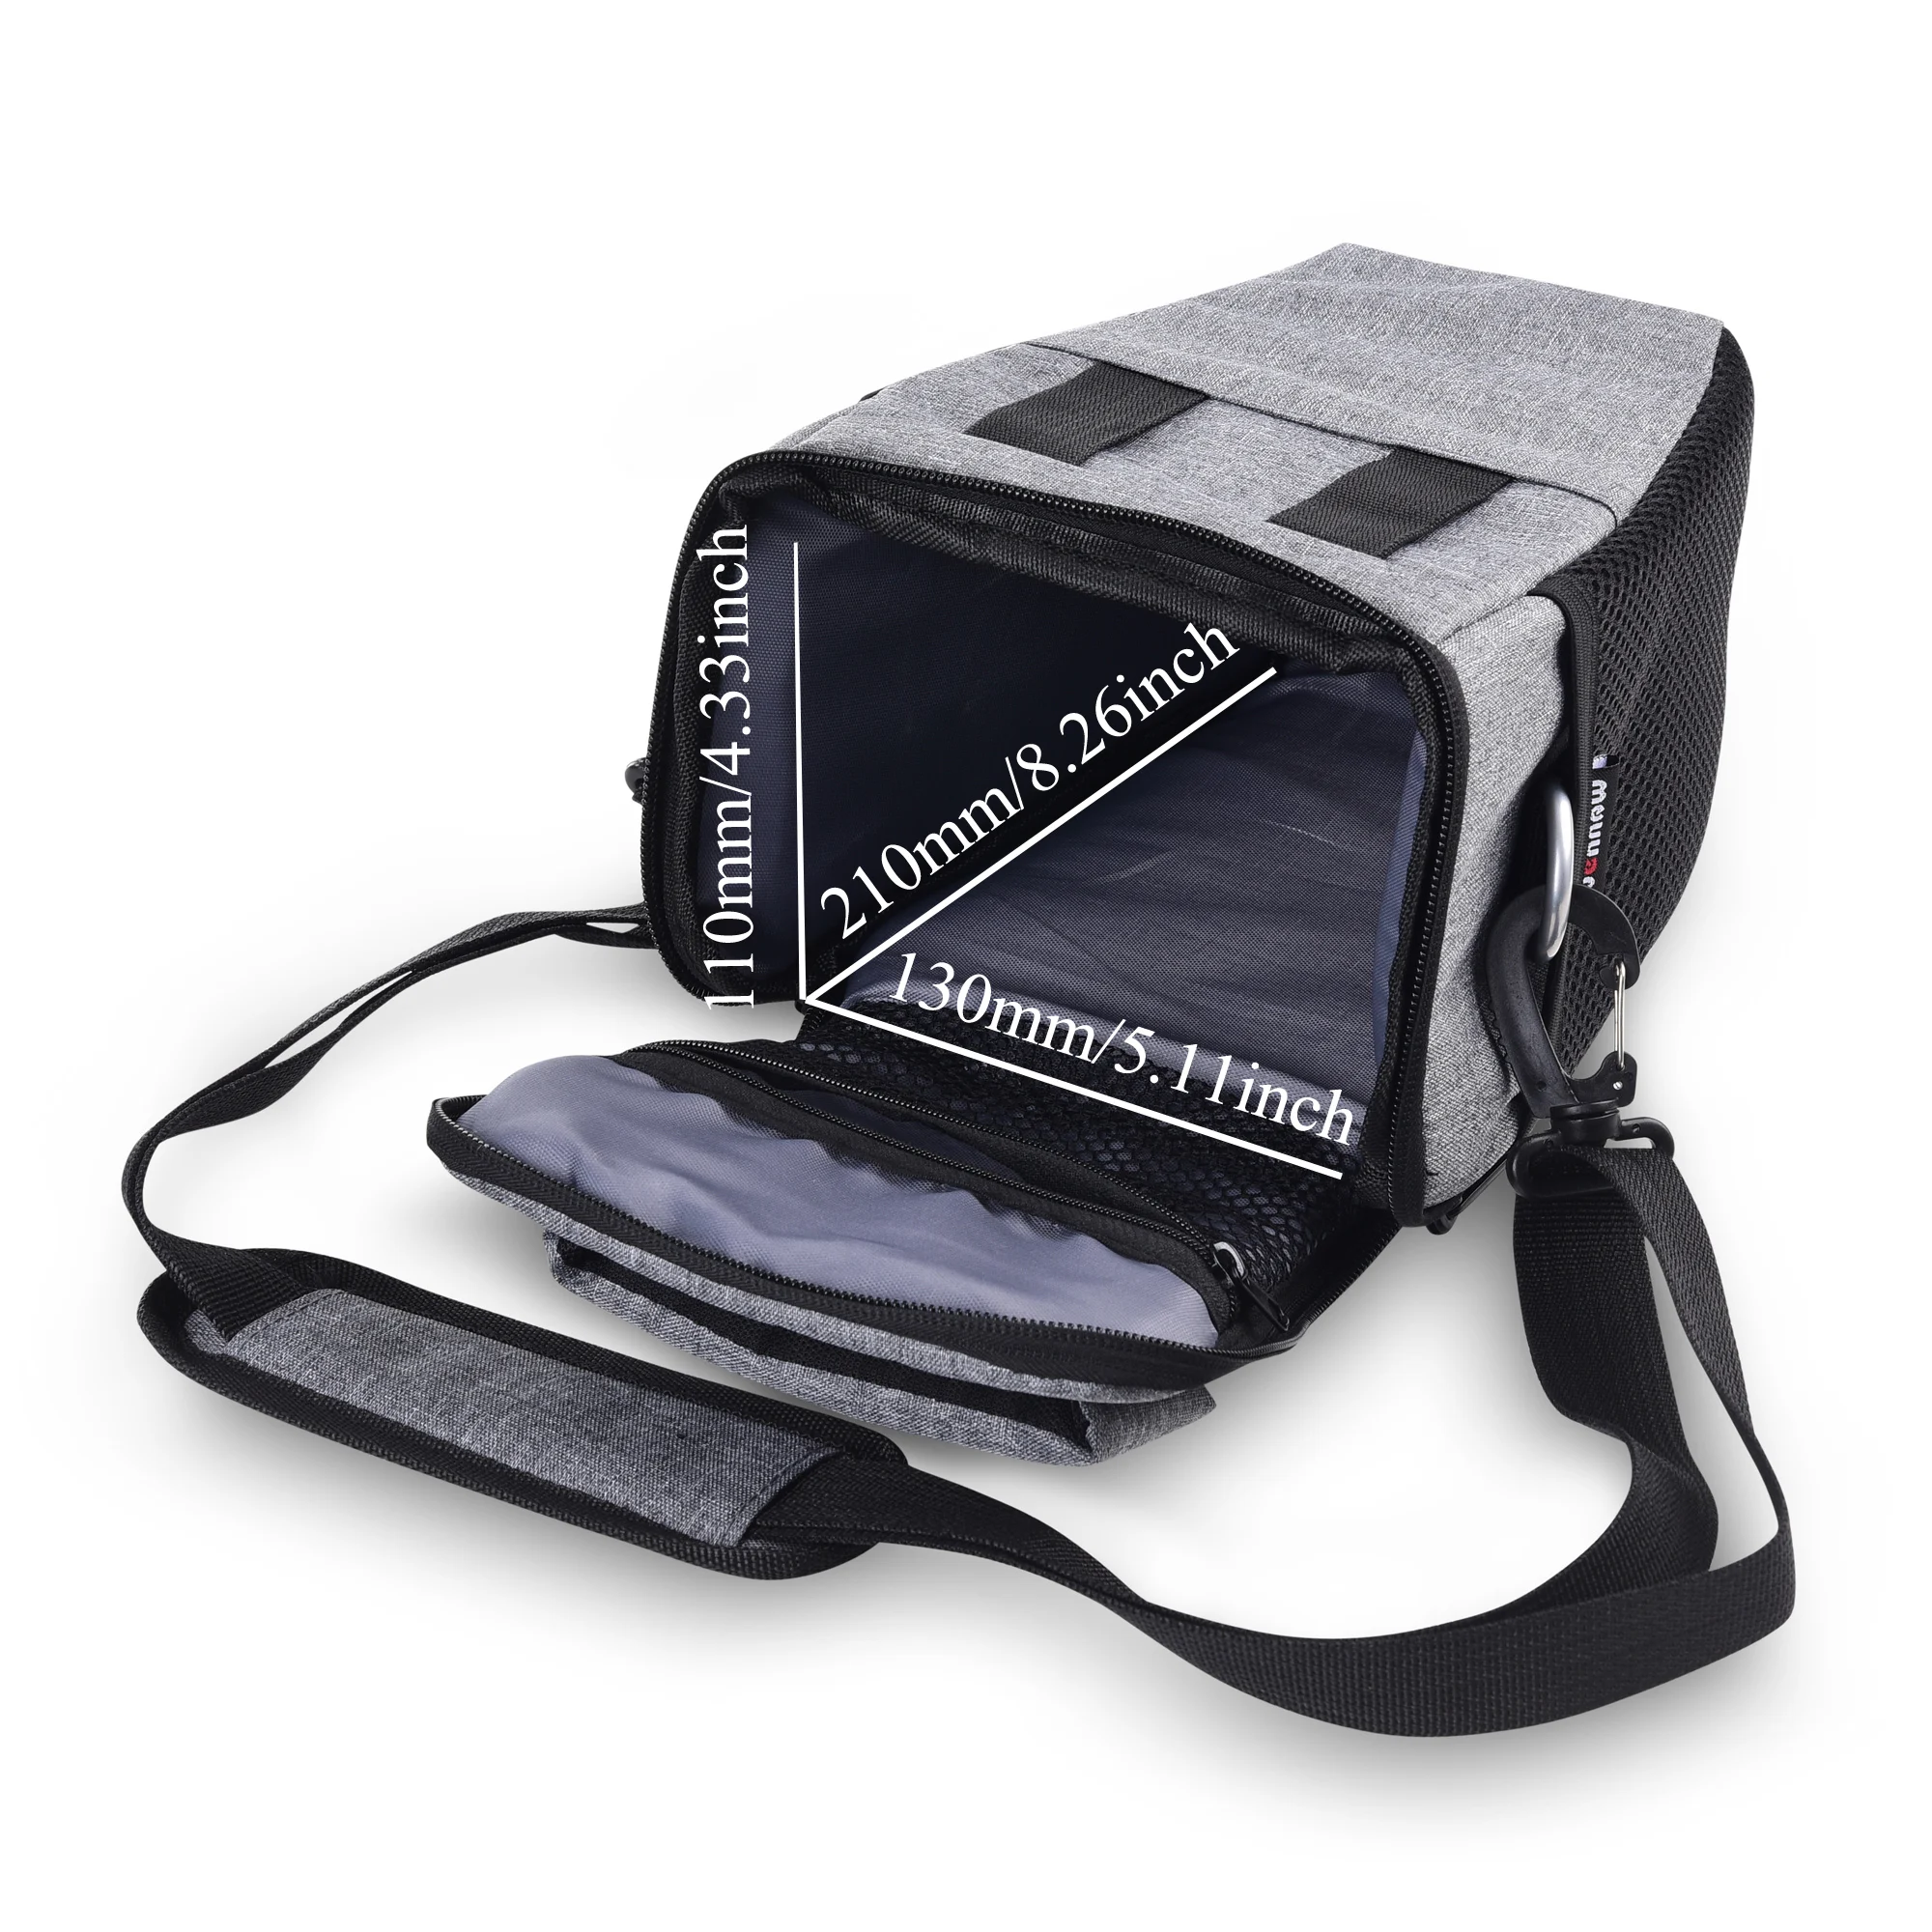 DSLR Камера сумка чехол для цифровой однообъективной зеркальной камеры Canon EOS 4000D 3000D 2000D 200D 250D 77D 80D 800D 1300D 70D 760D 750D 700D 600D 100D 1200D